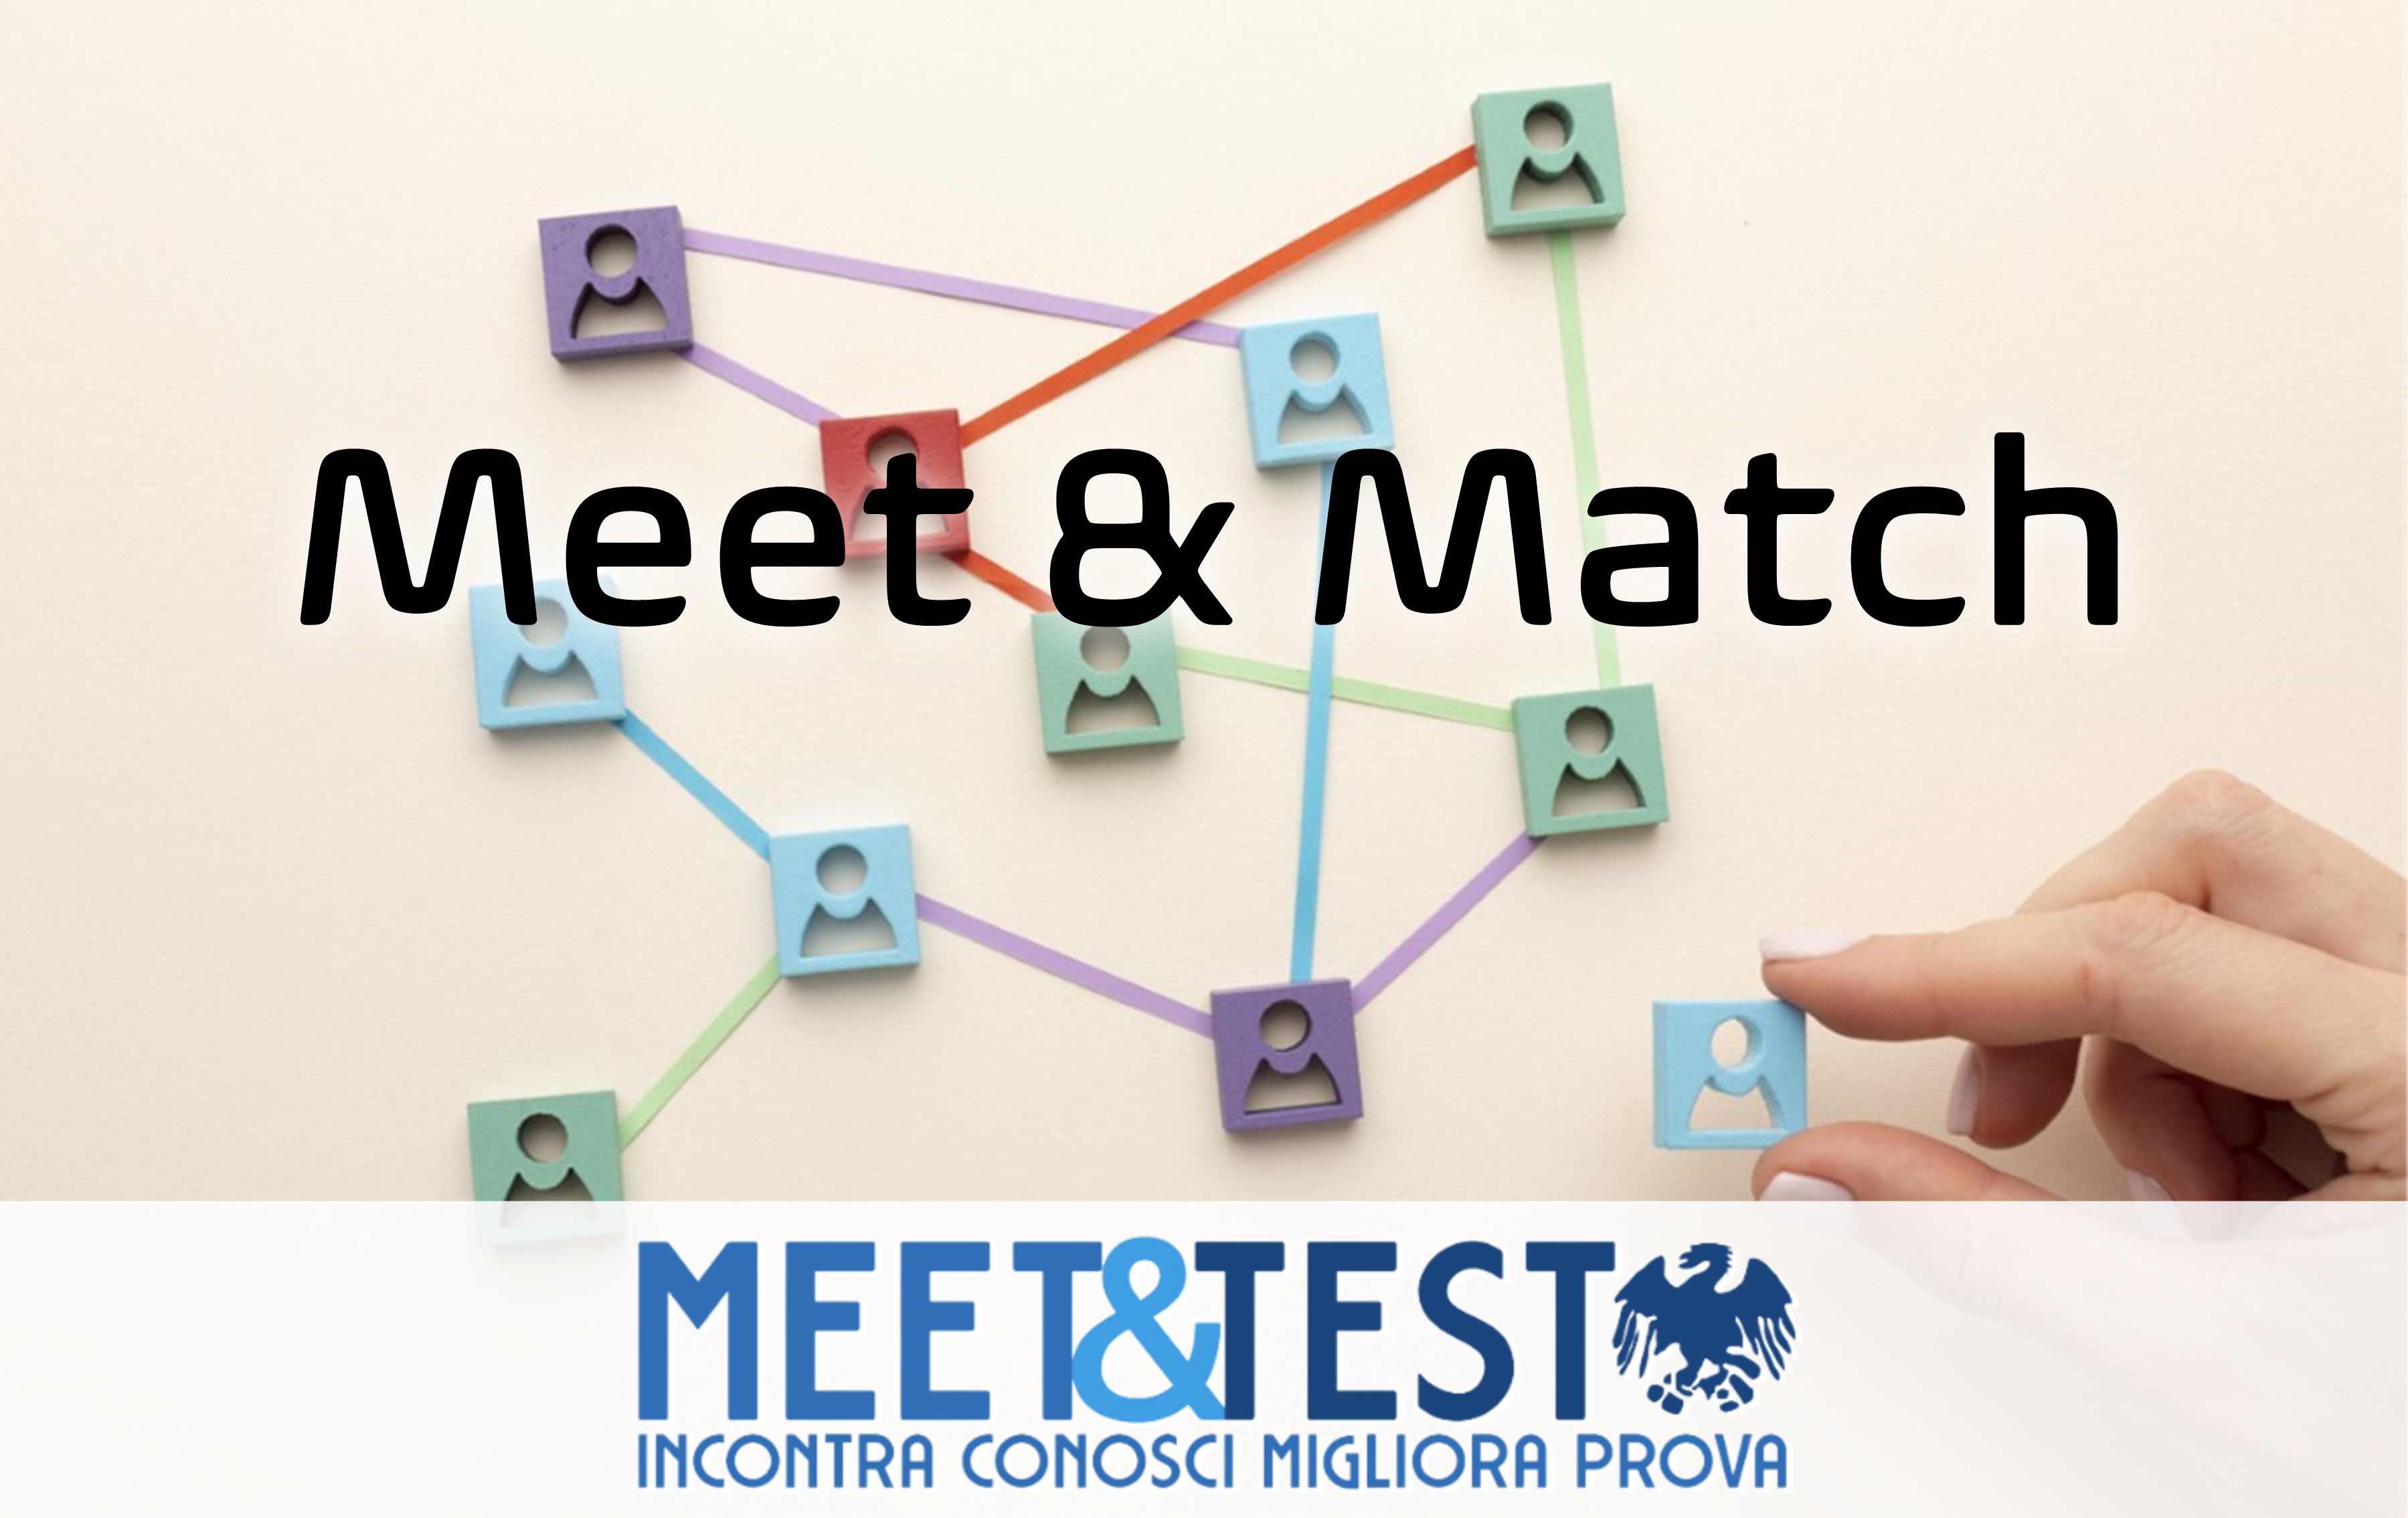 Meet & Match